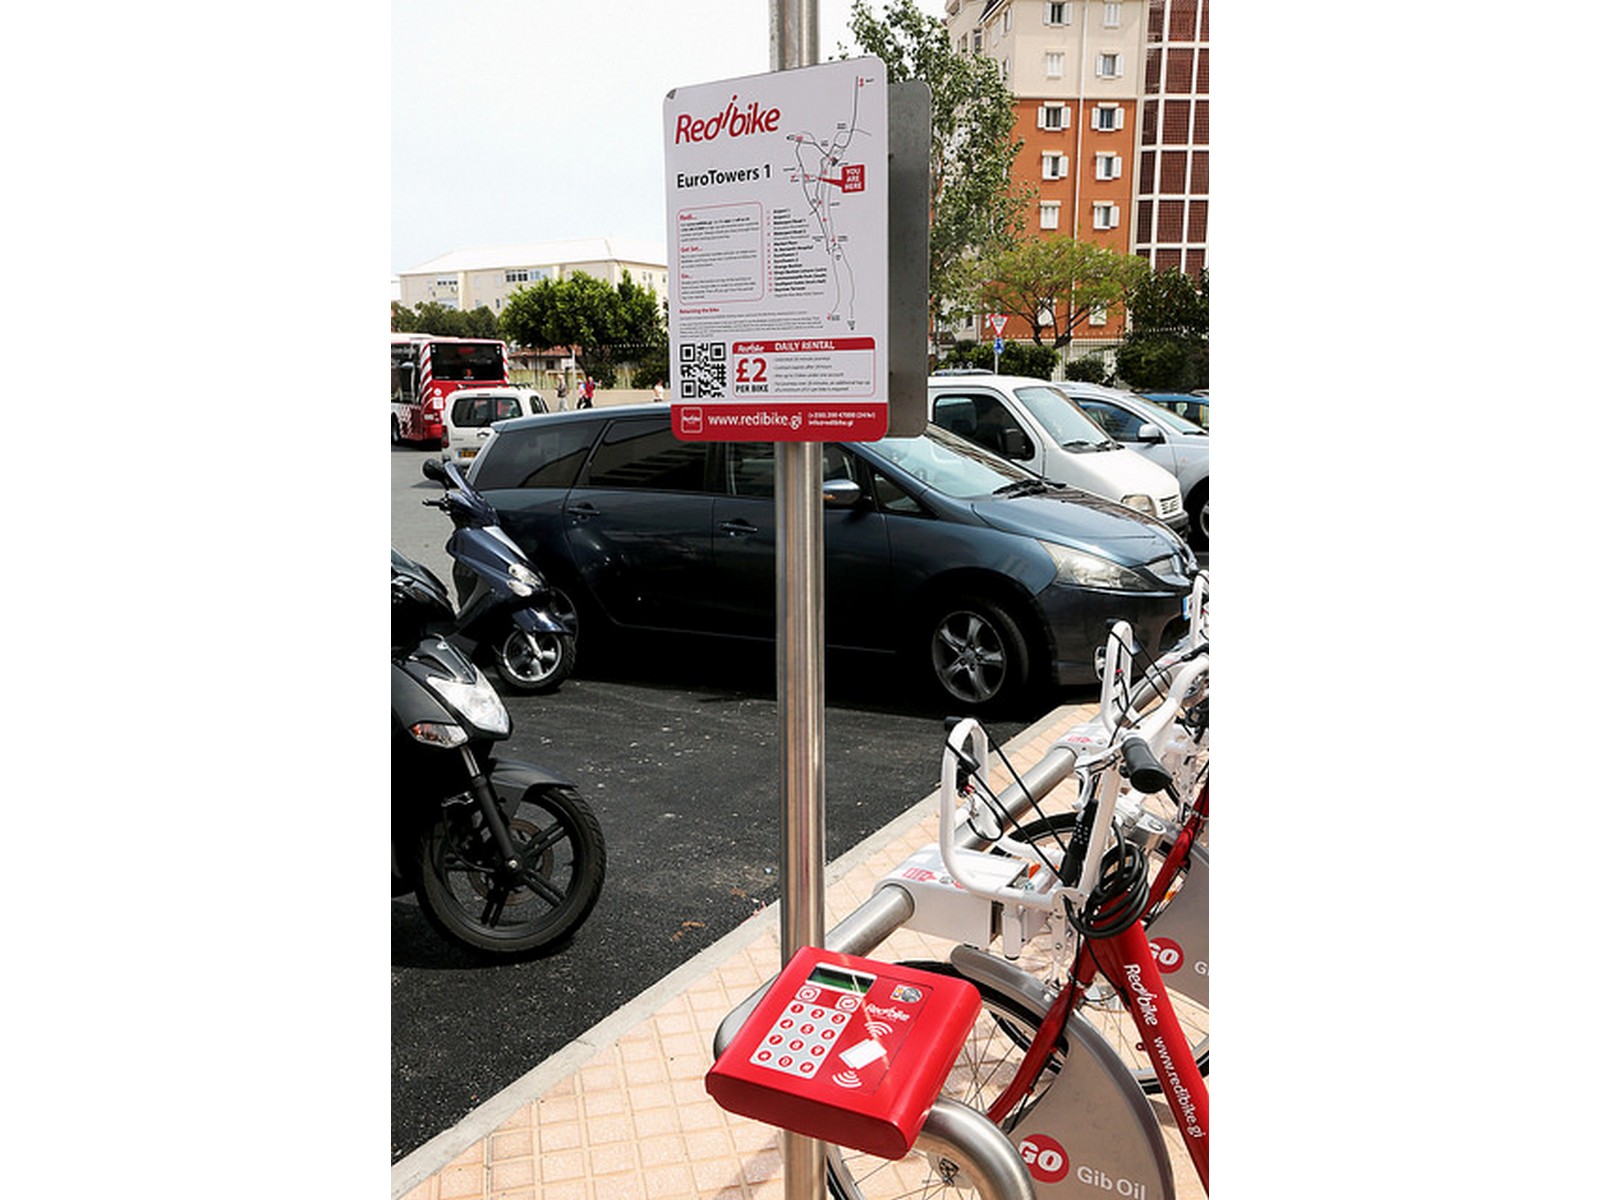 Punto de anclaje de bicicletas Redbike en Gibraltar.jpg